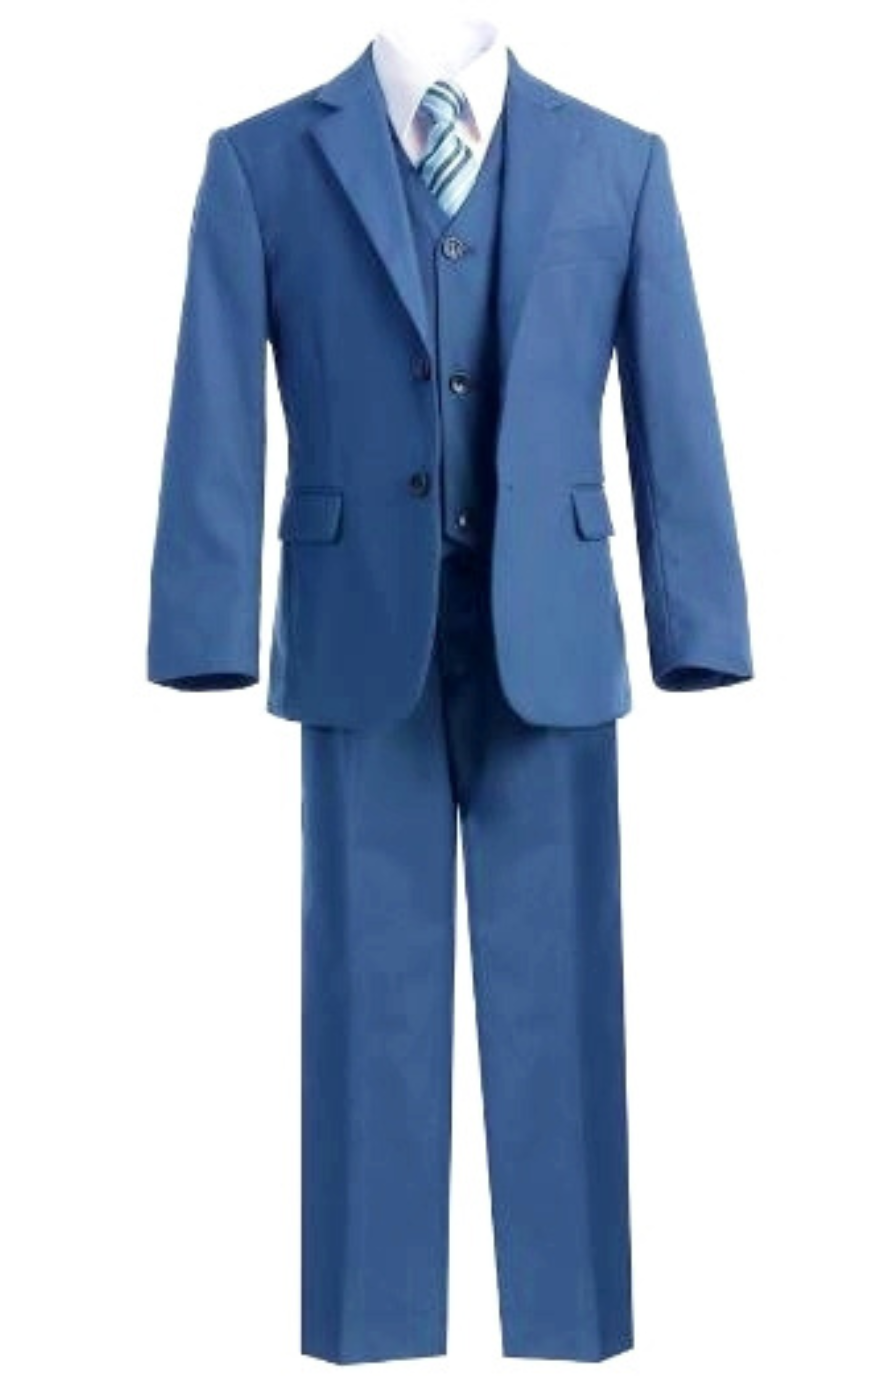 Harry 5pc Boys Suit: OCEAN BLUE (Slim Fit)